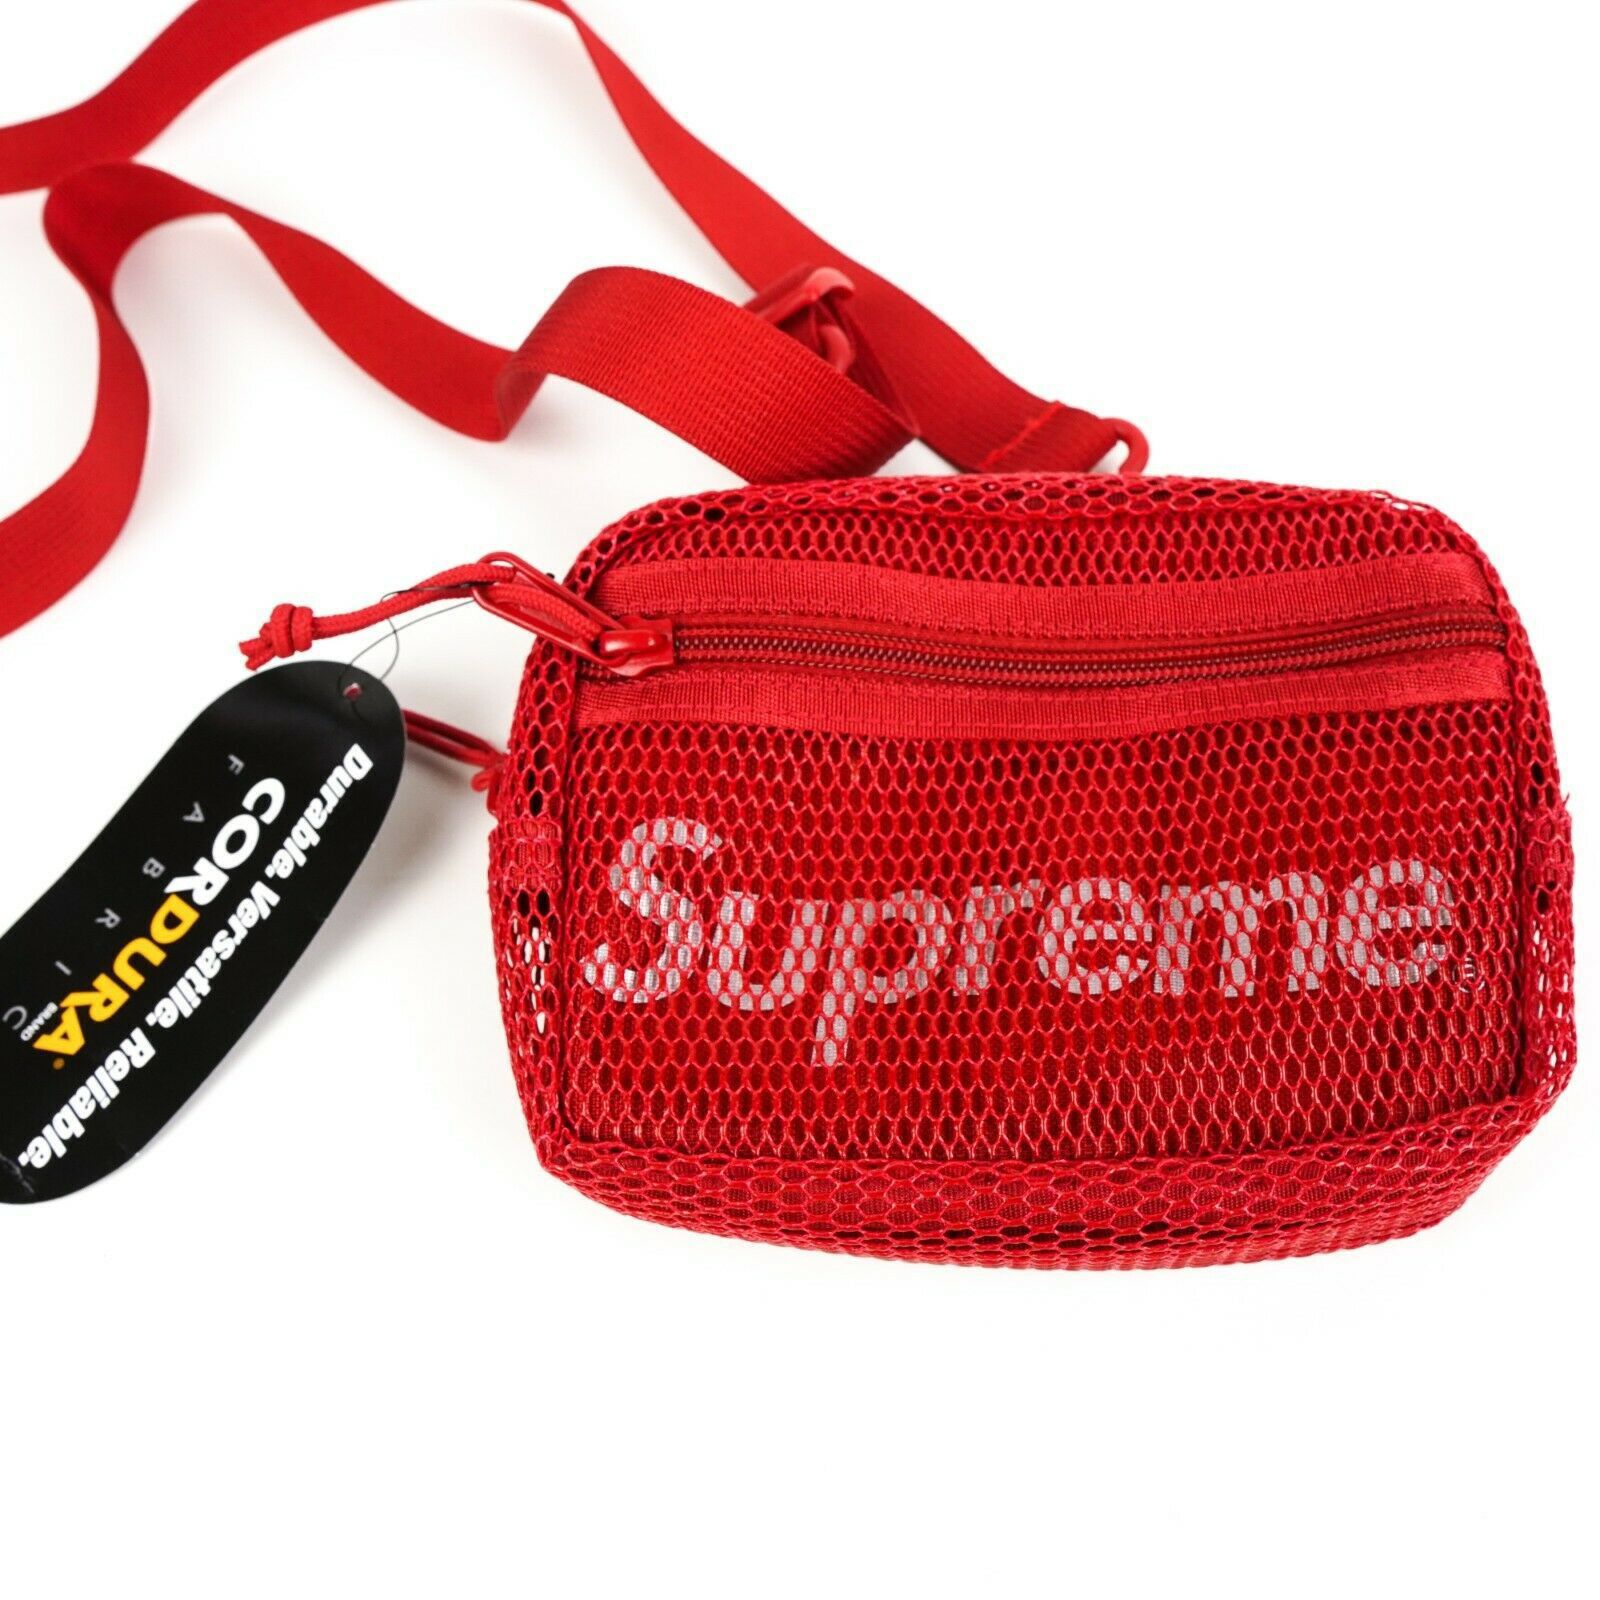 Supreme should bag